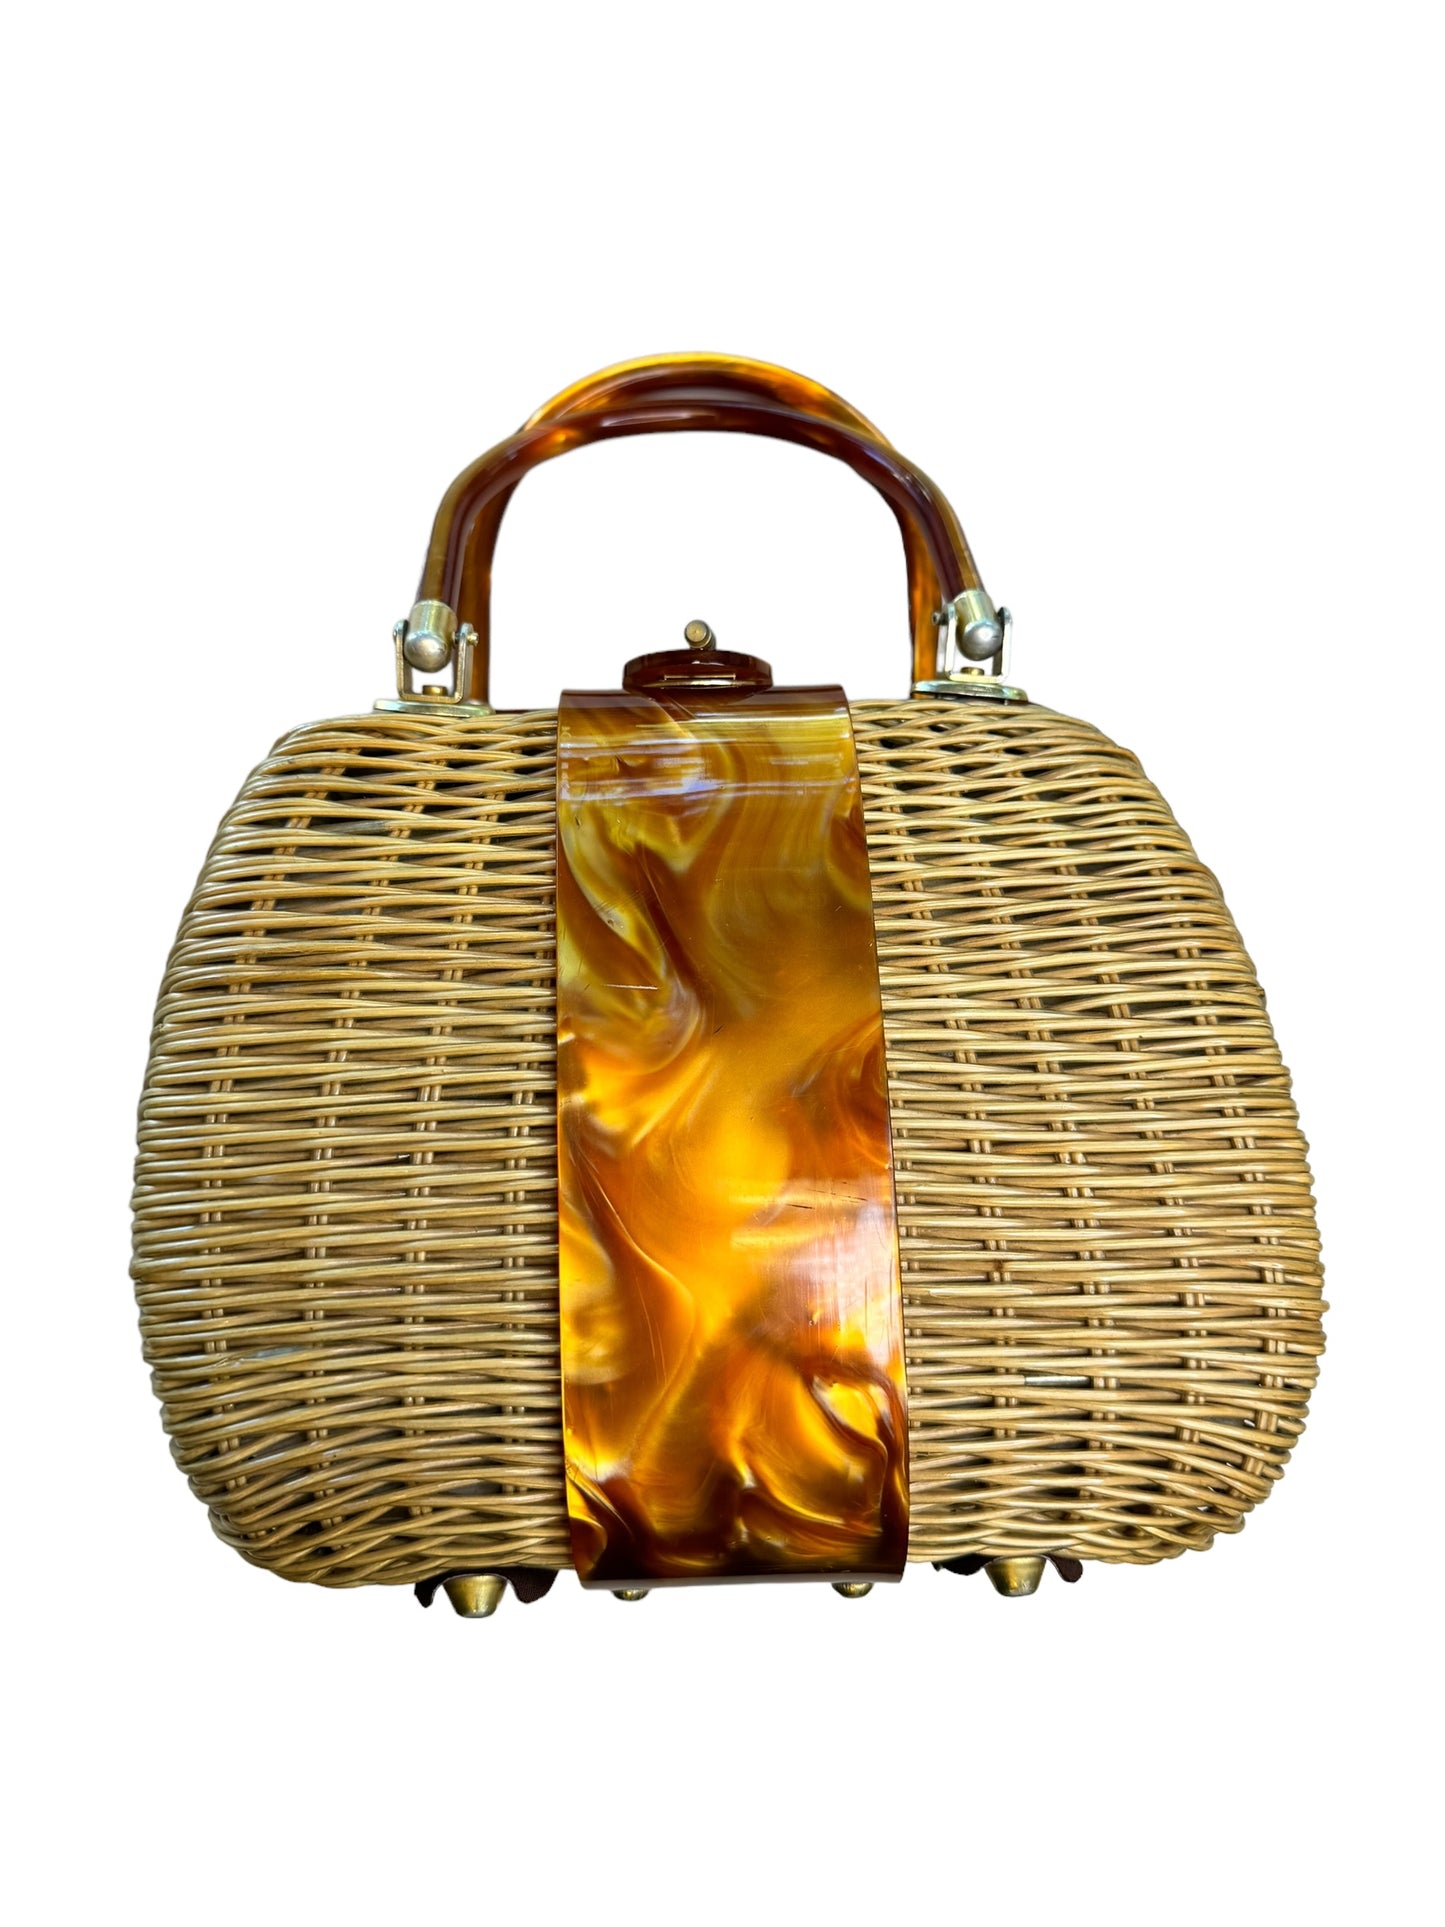 Vintage Basket and Lucite Bag